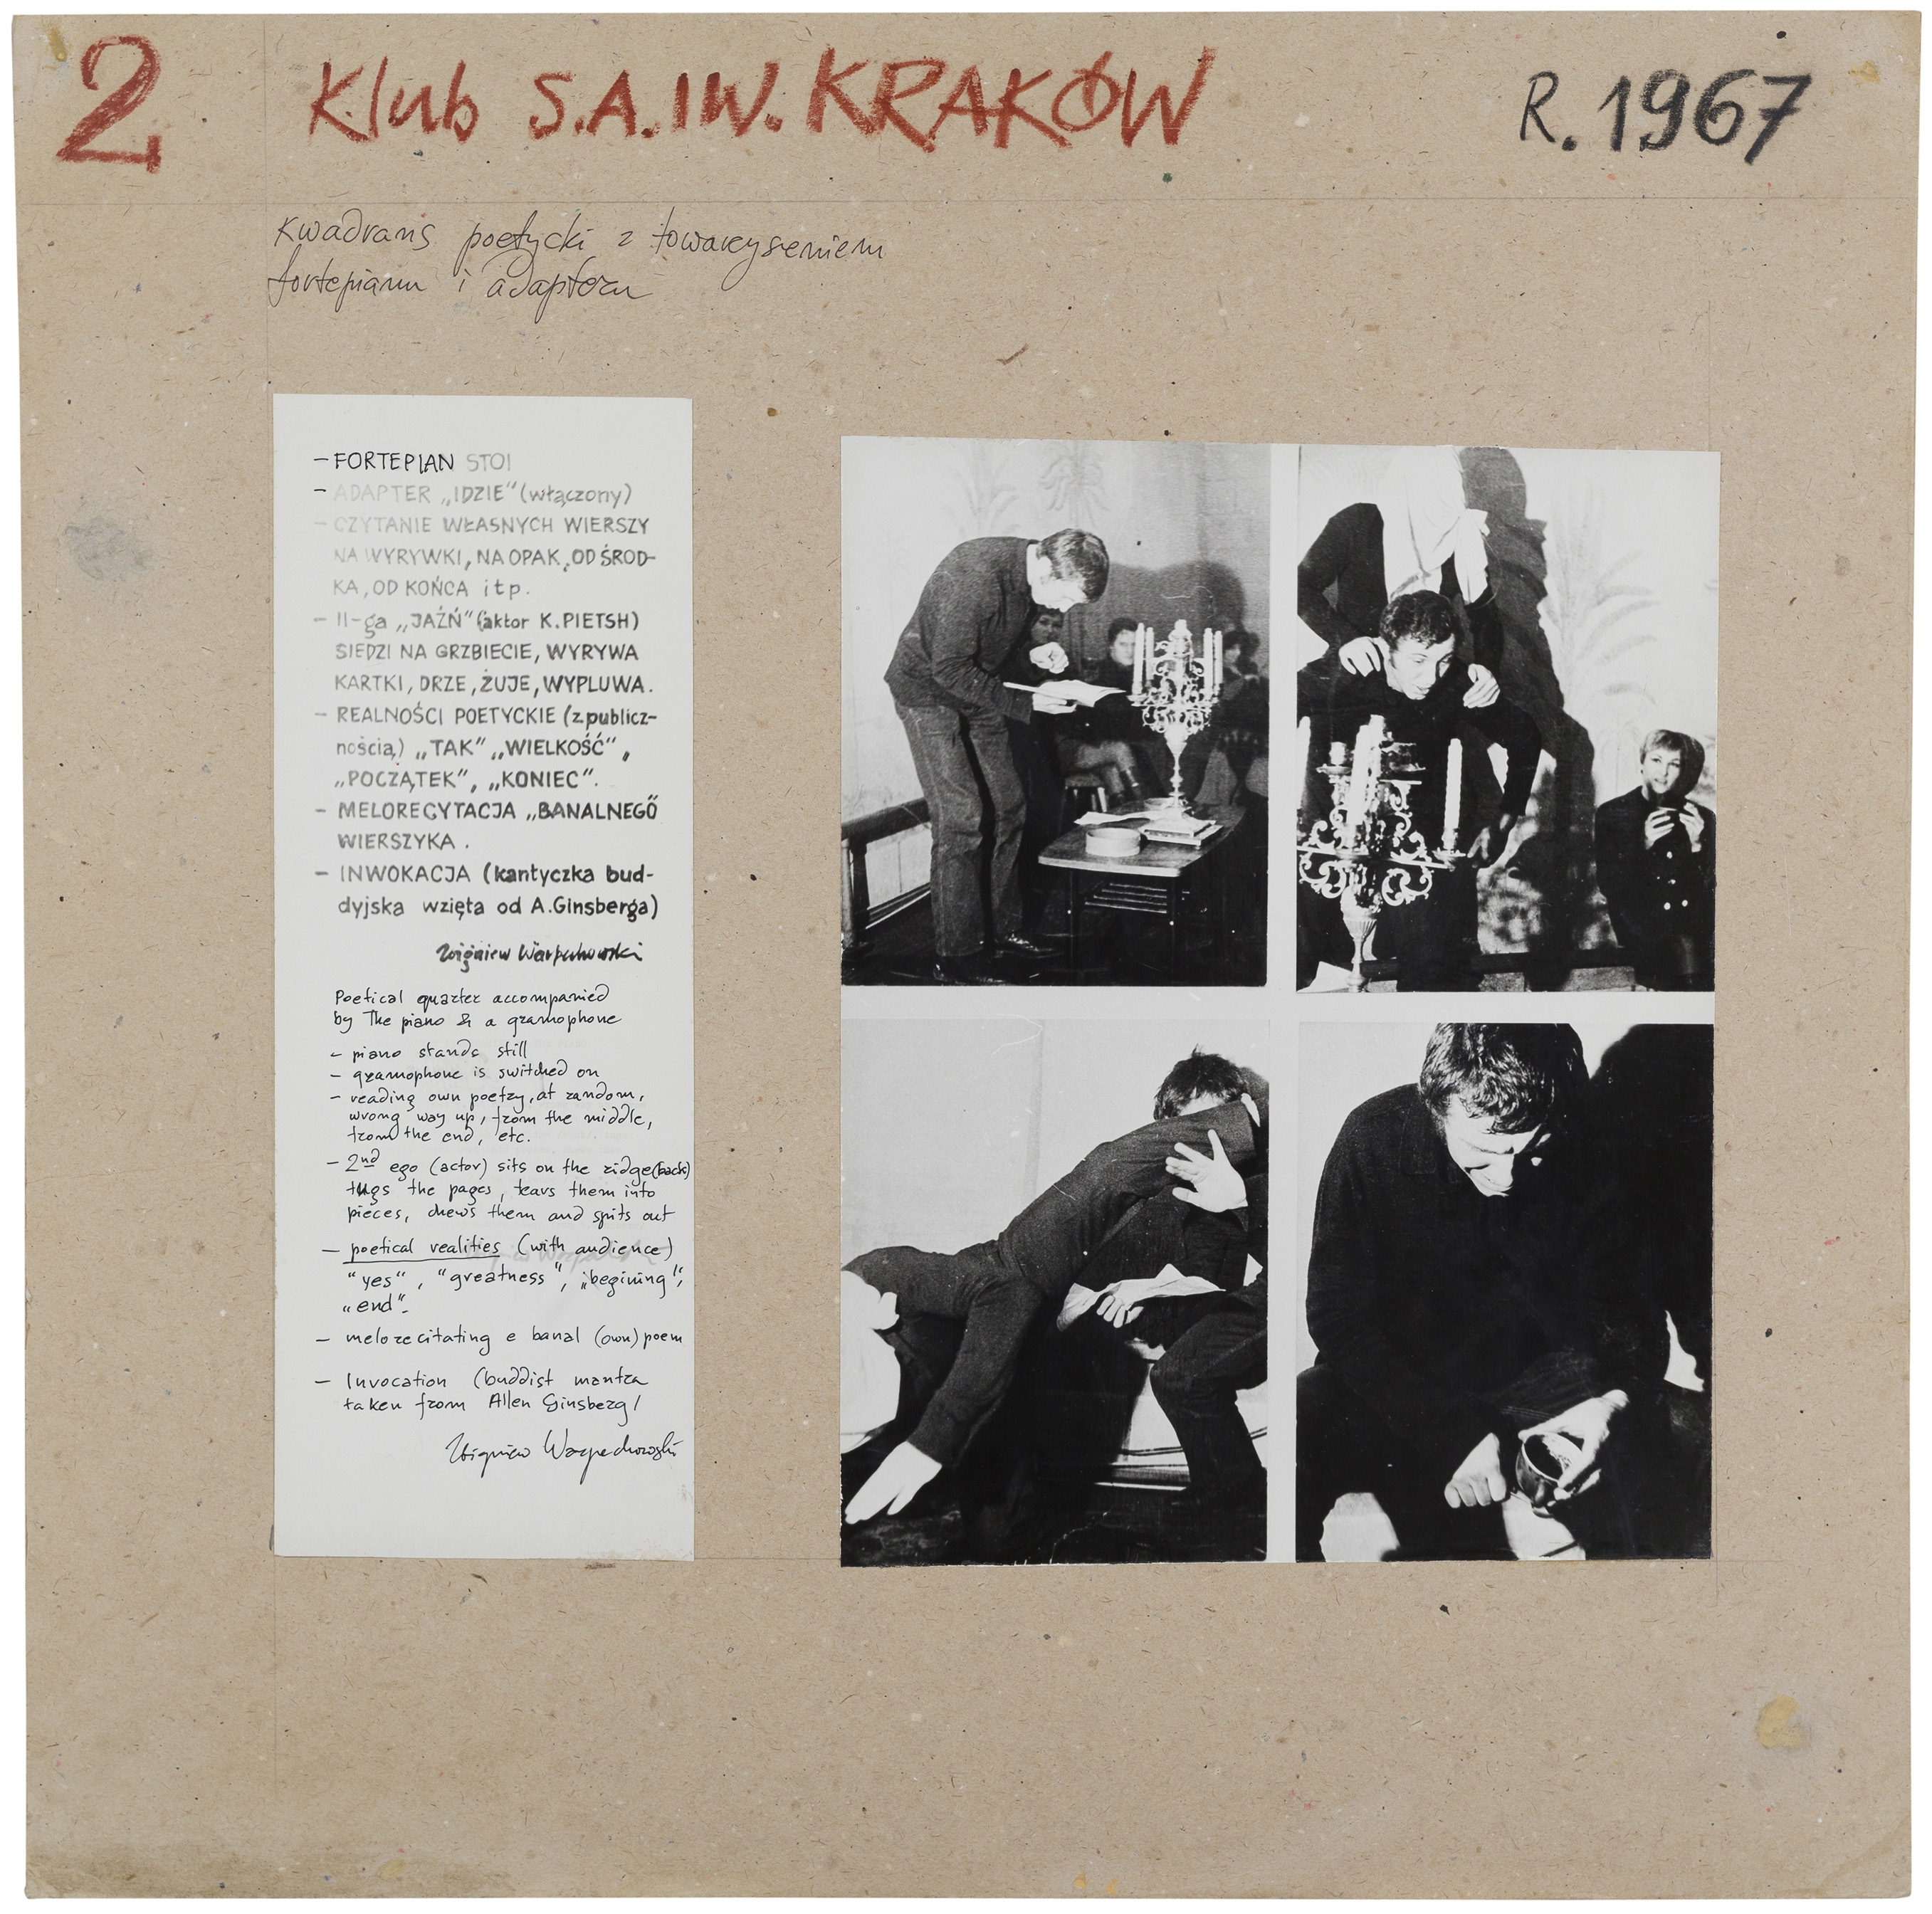 2. KLUB S.A. I. W. Kraków, 1967; Kwadrans poetycki z towarzyszeniem fortepianu i adapteru